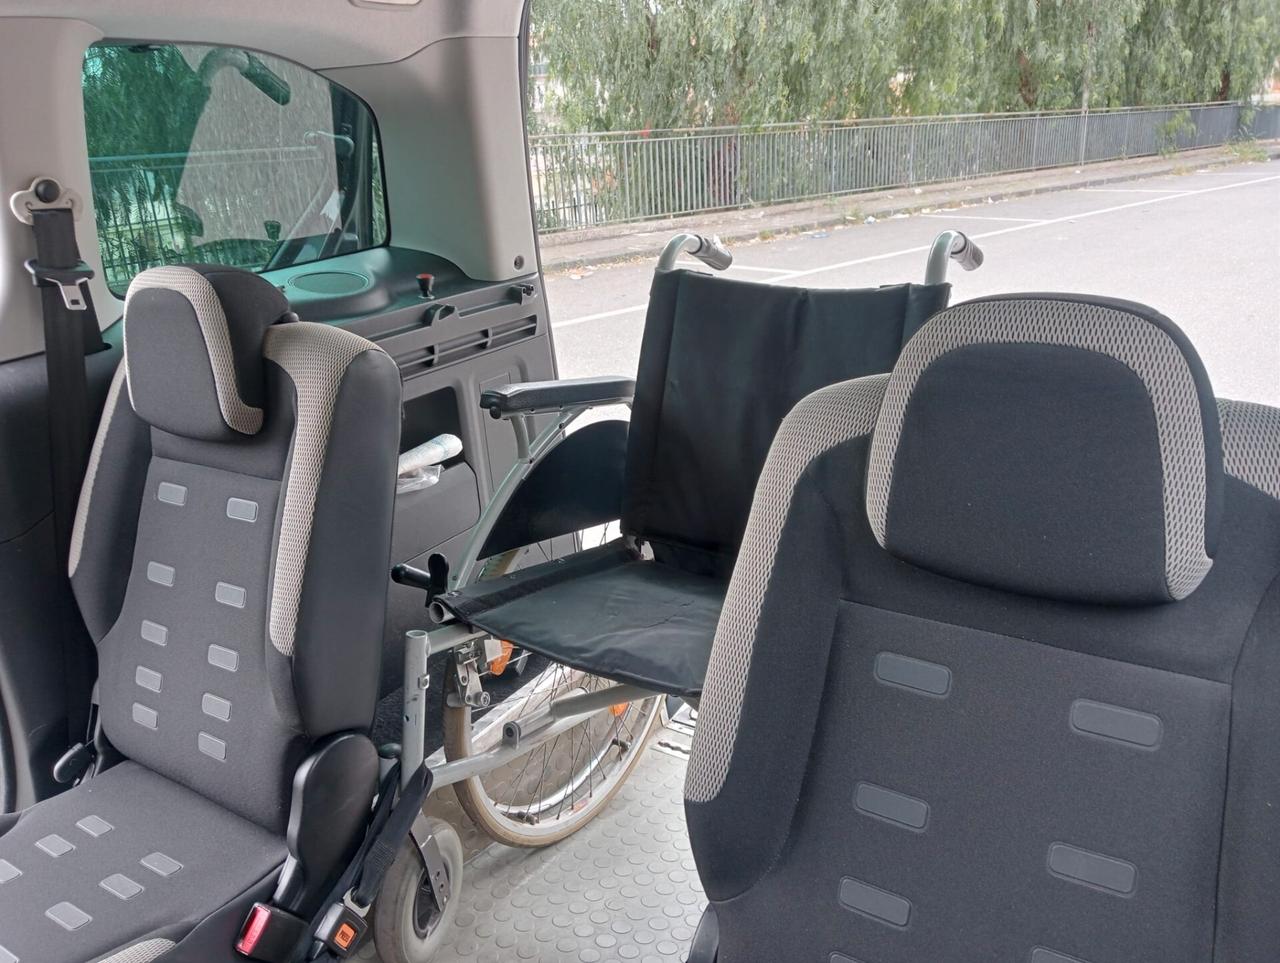 Citroen Berlingo Pianale ribassato con rampa disabili in carrozzina